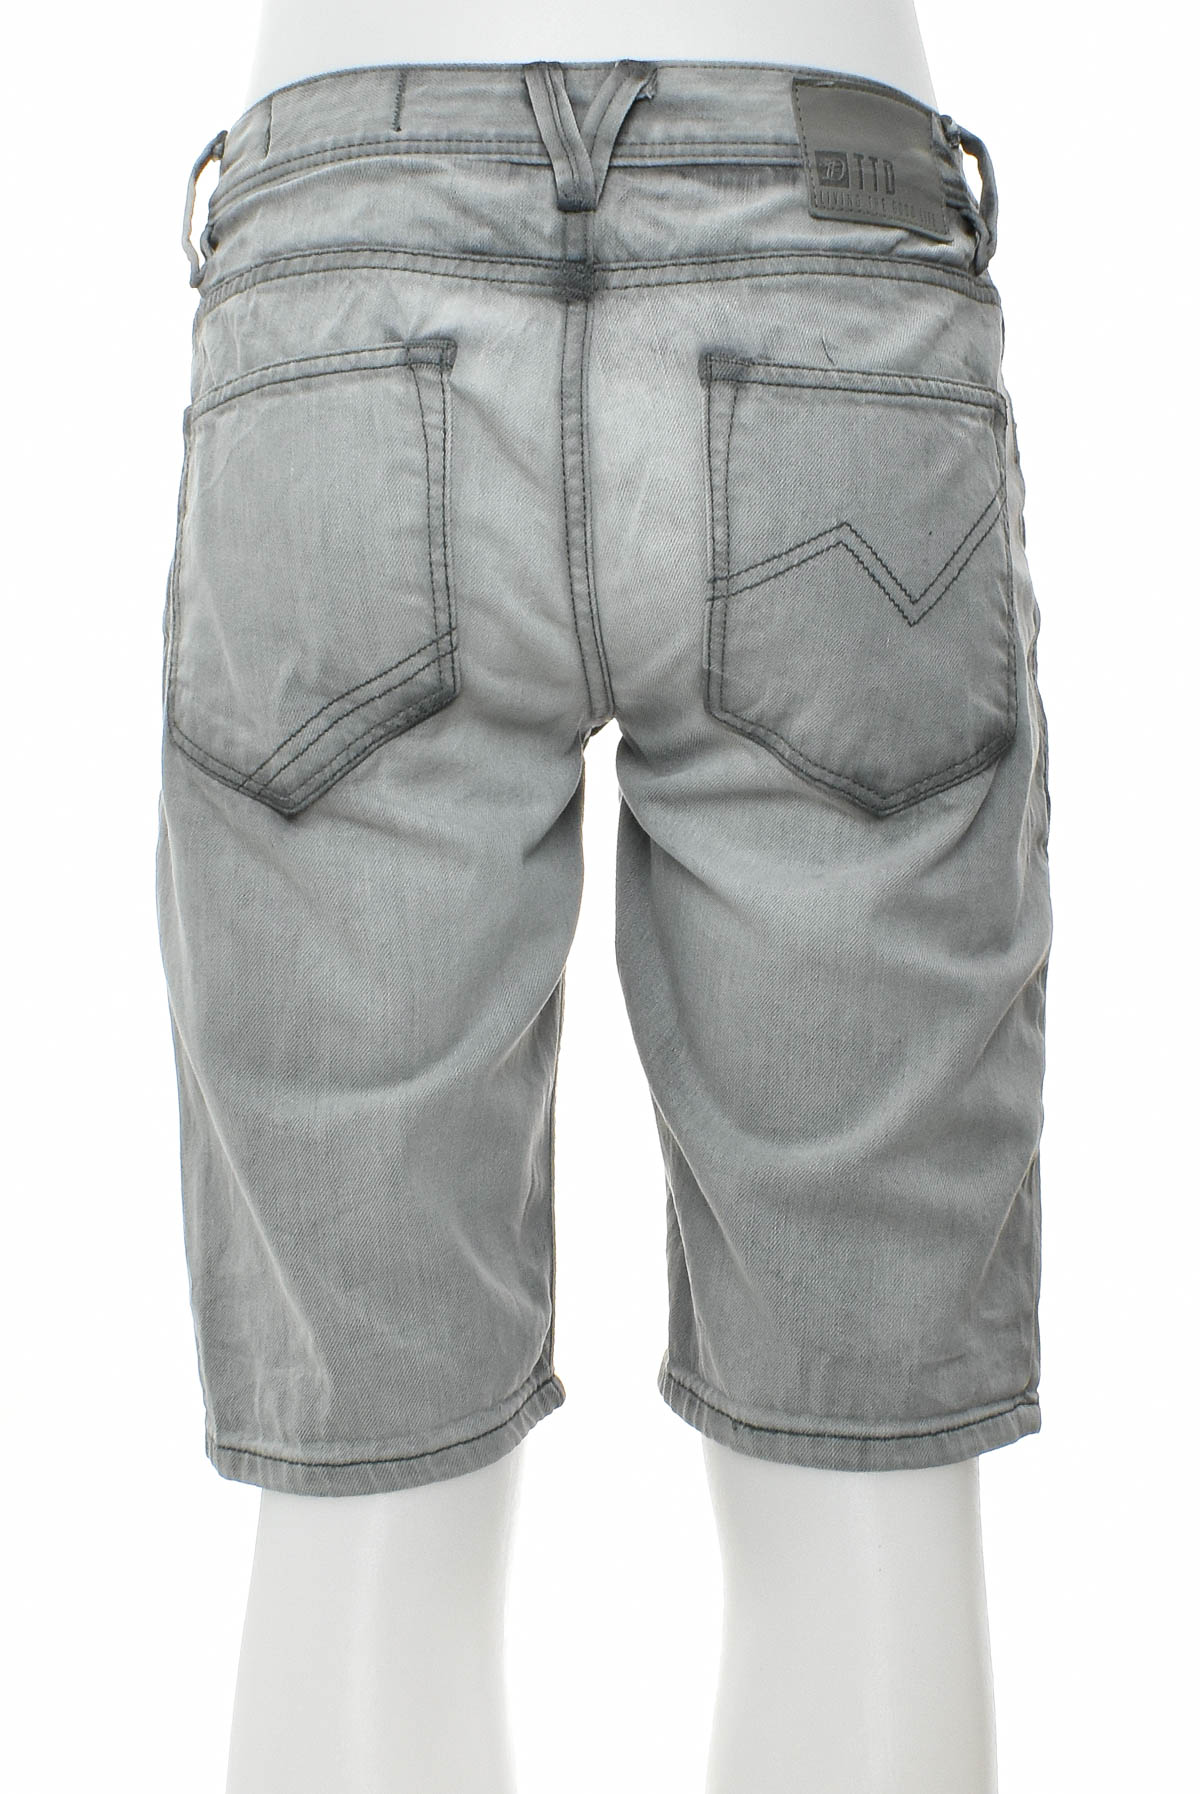 Men's shorts - TOM TAILOR Denim - 1